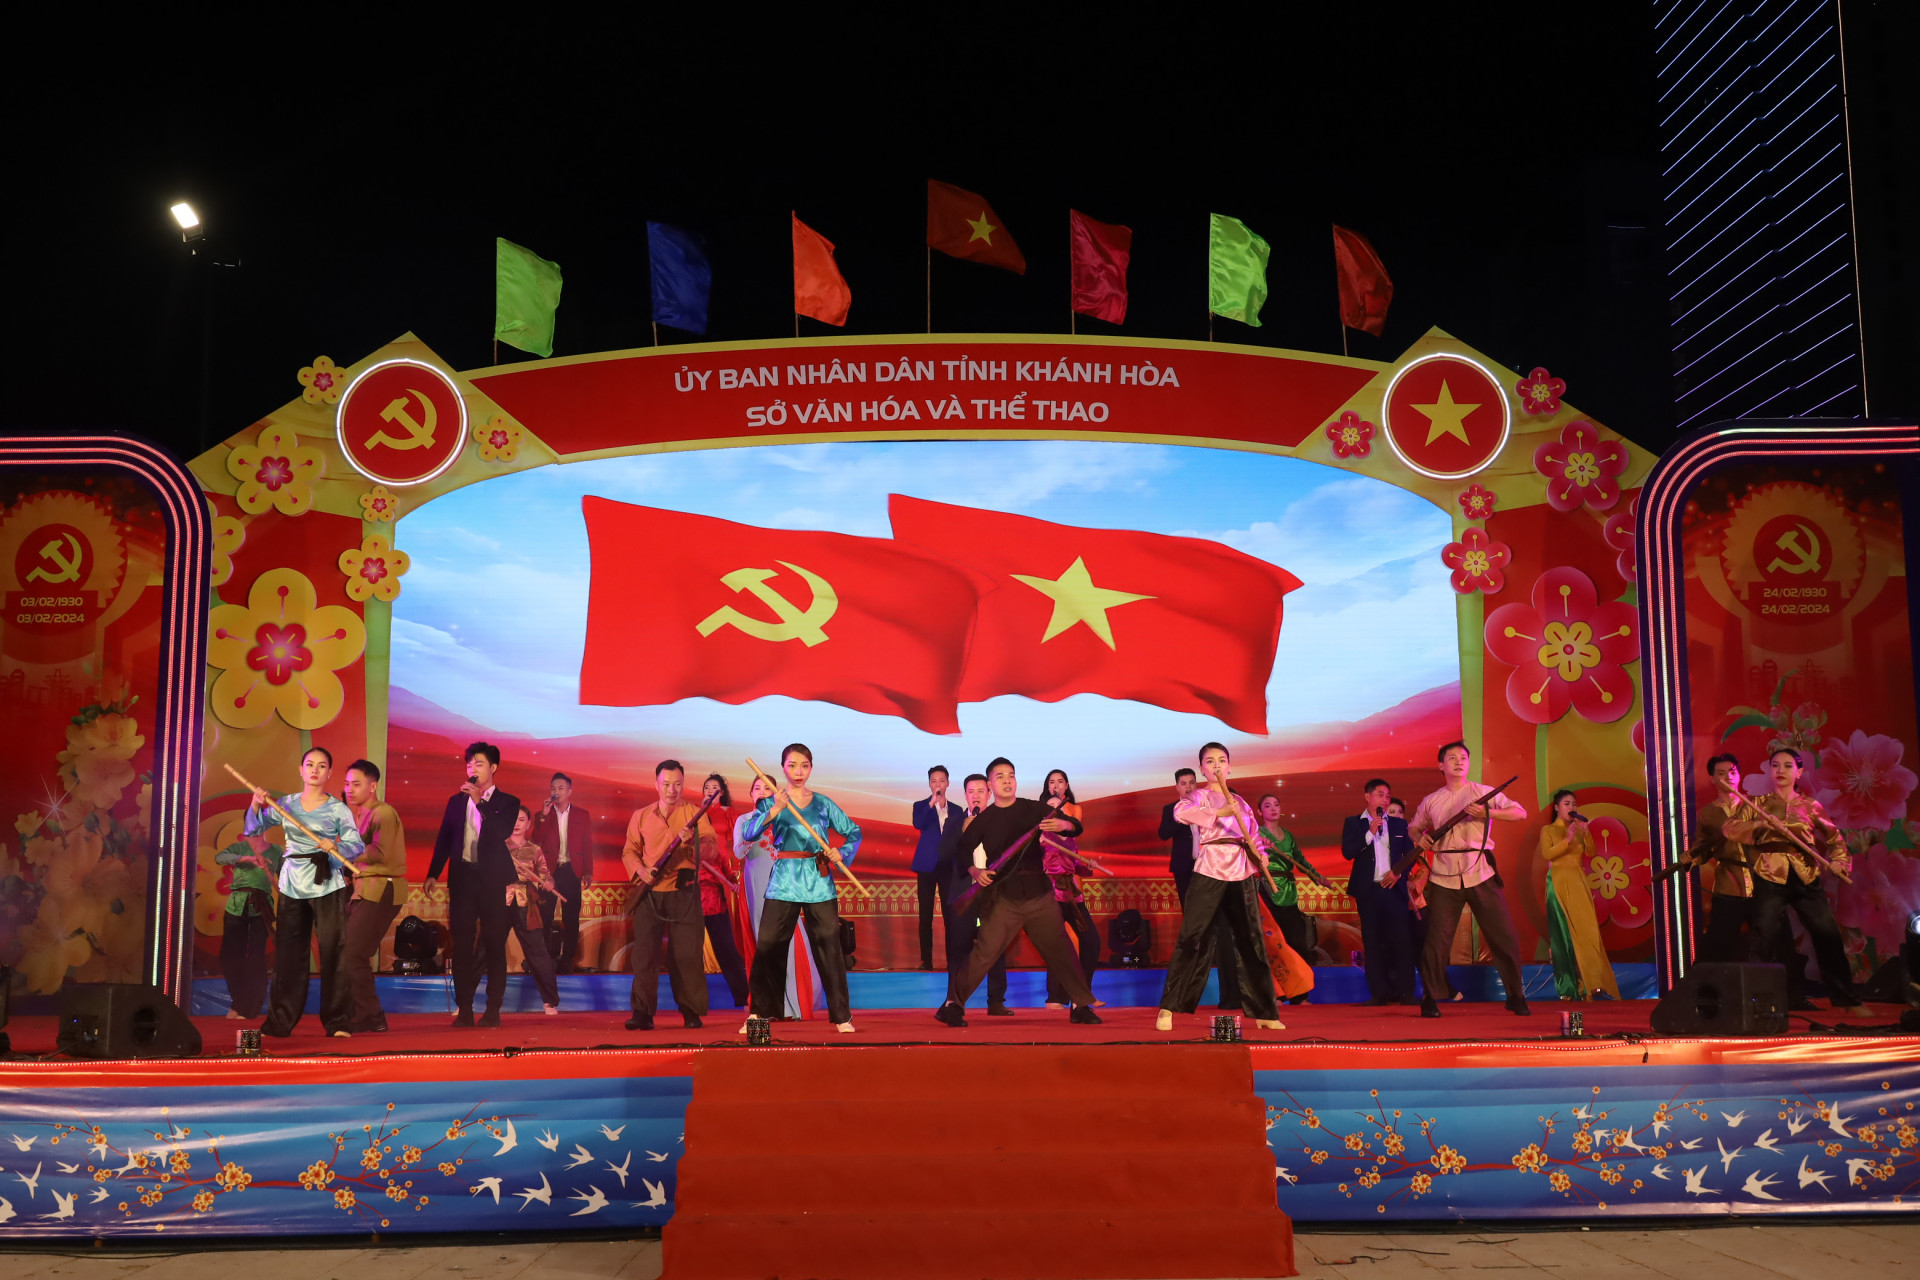 Liên khúc hát múa “Tự hào Đảng vinh quang” mang đến không khí đấu tranh cách mạng của dân tộc Việt Nam.